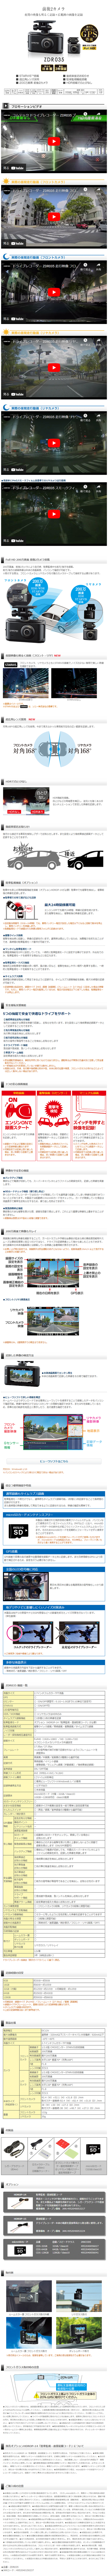 楽天市場】ドライブレコーダー 前後2カメラ コムテック ZDR035 日本製 3年保証 ノイズ対策済 フルHD高画質 常時 衝撃録画 GPS搭載  駐車監視対応 2.7インチ液晶 ドラレコ : シャチホコストア